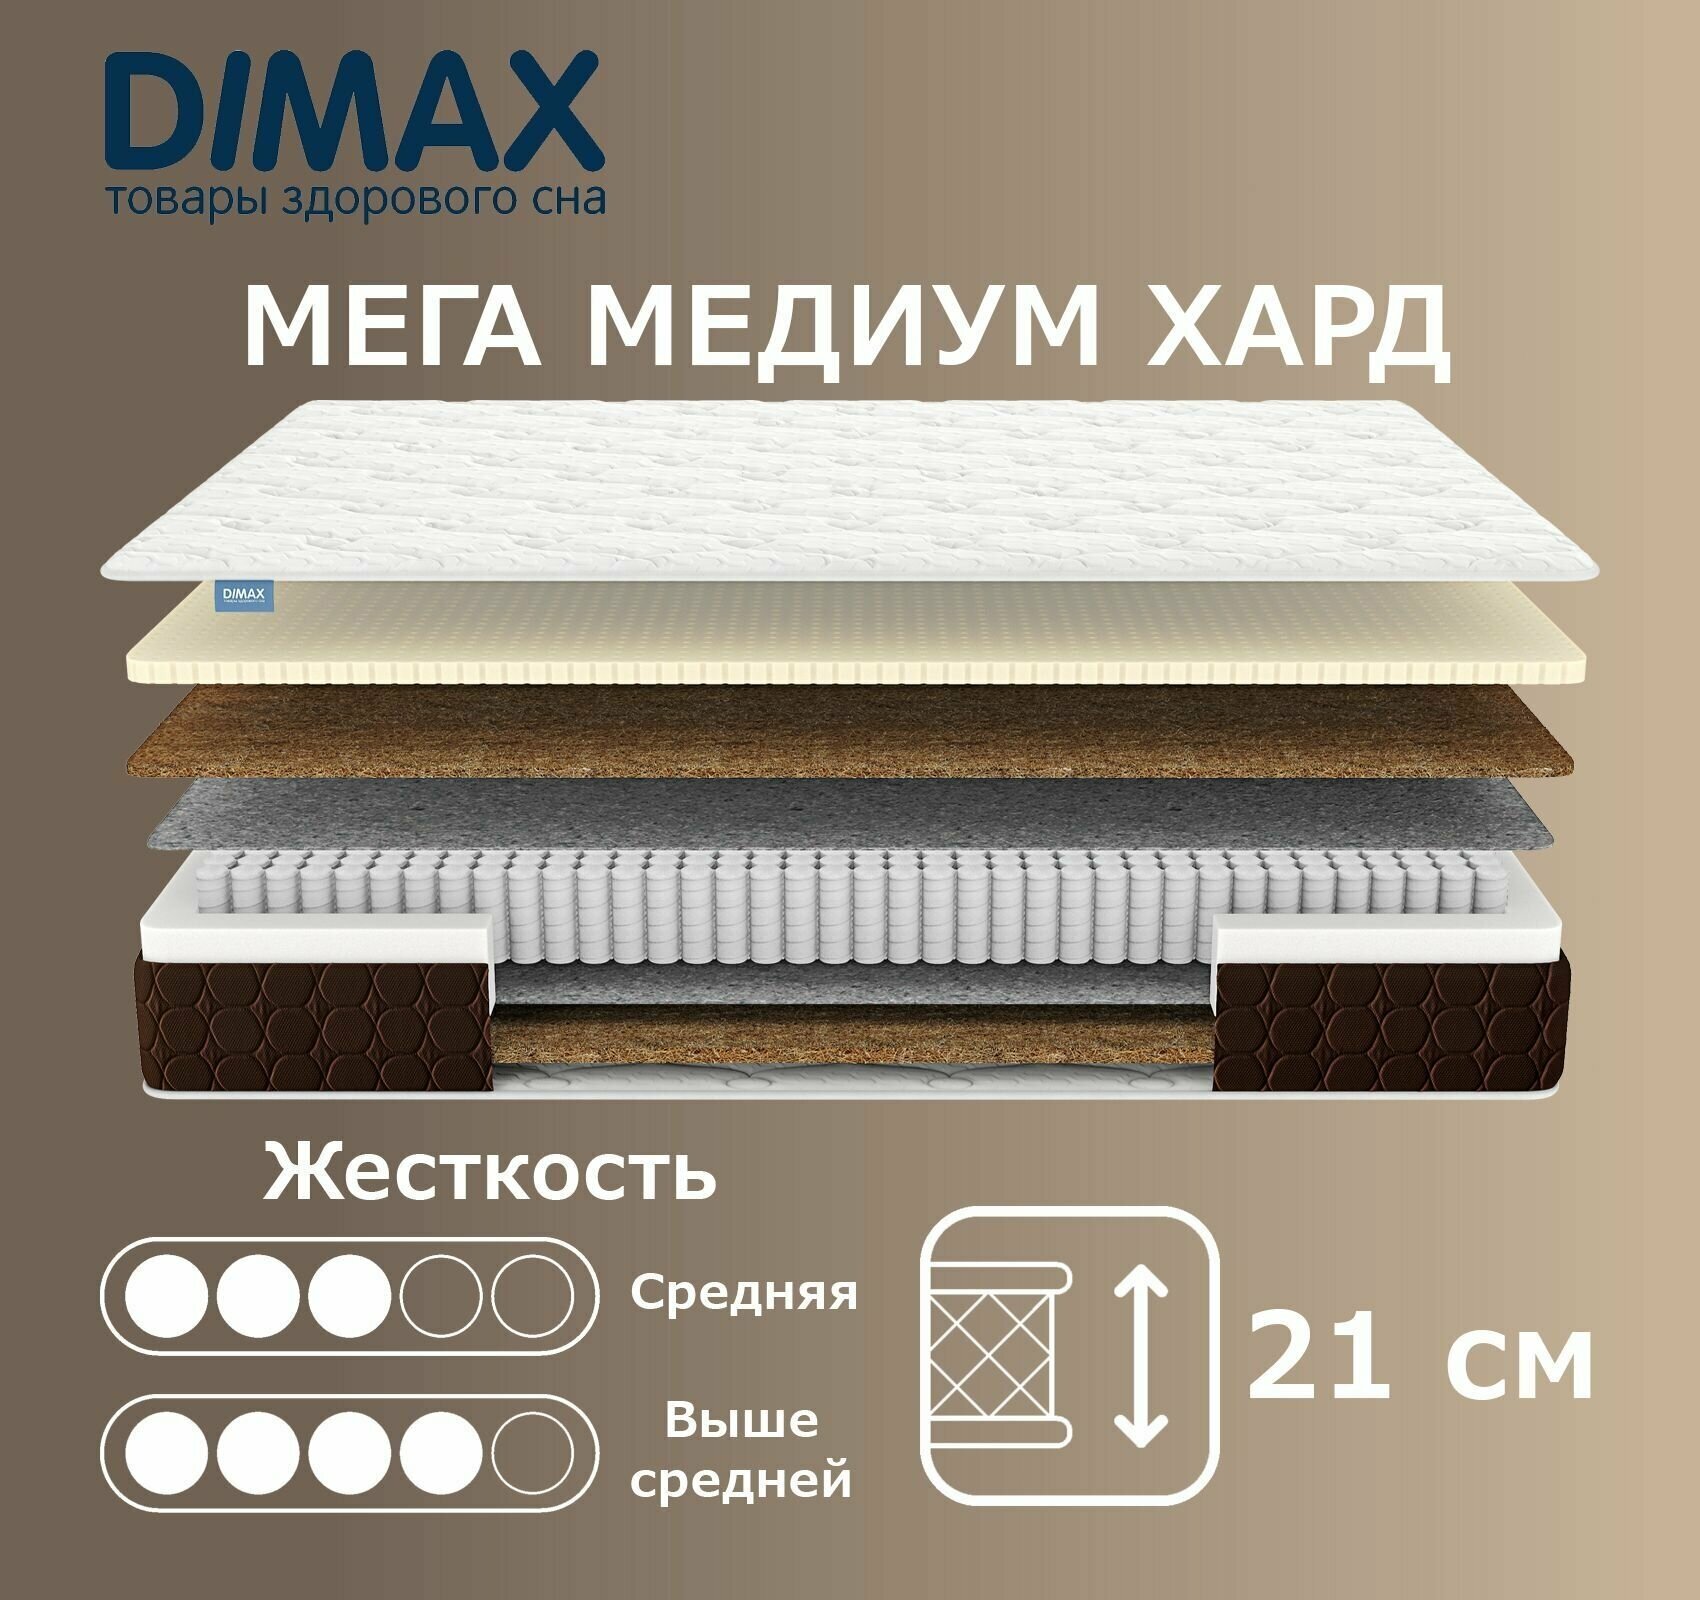 Матрас Dimax Мега Медиум Хард 120х200 см